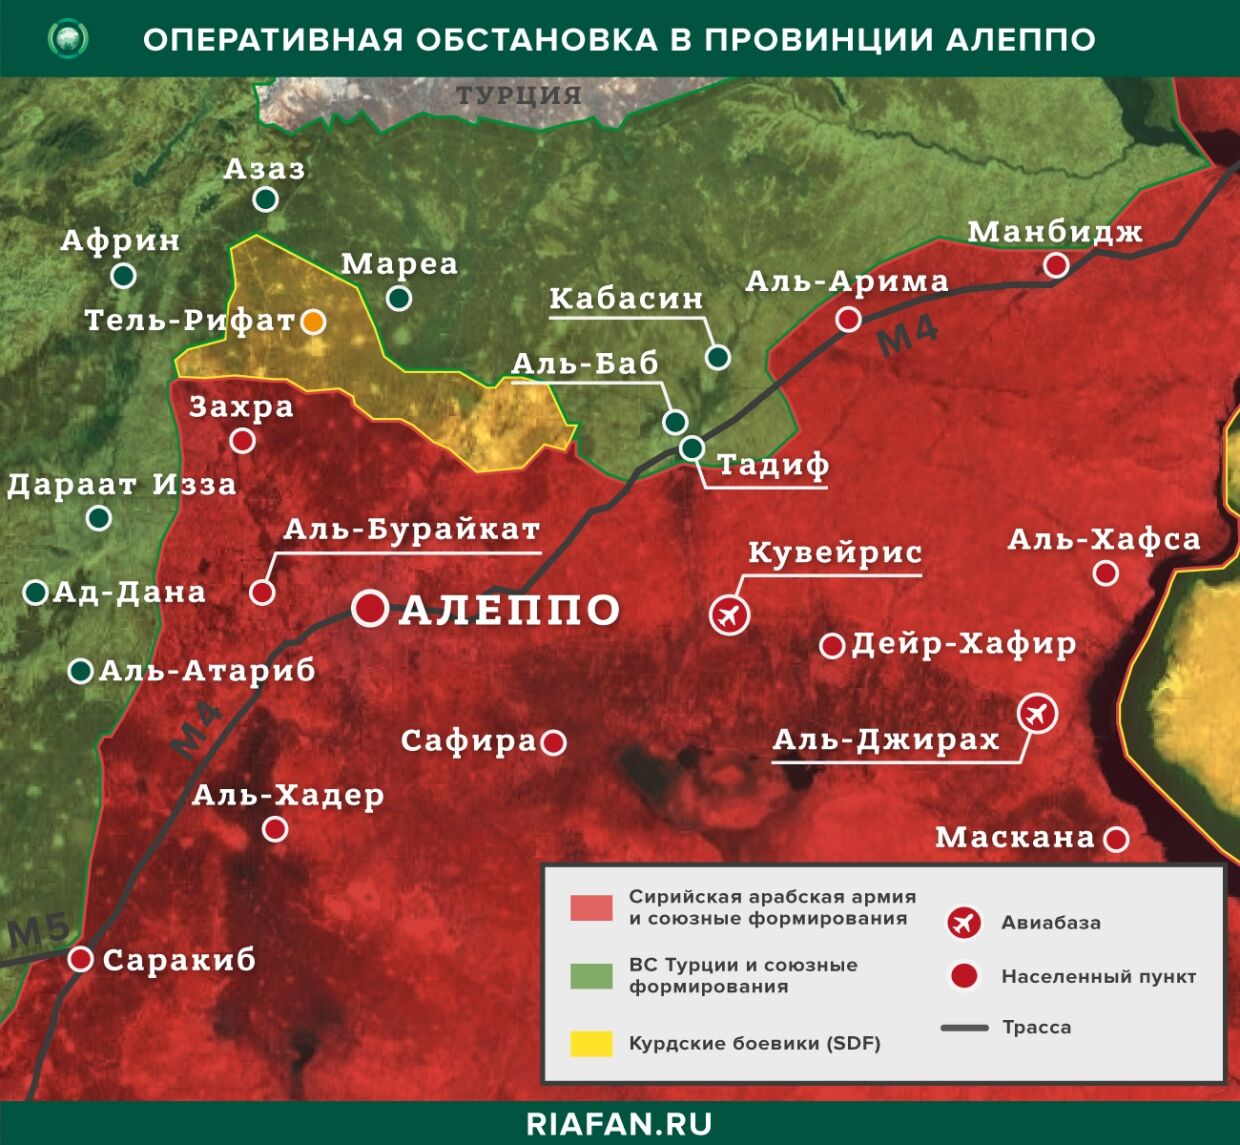 Noticias de Siria 6 Mayo 22.30: ХТШ строит новые укрепления в Идлибе, террористы ИГ* совершили нападение в Дейр-эз-Зоре